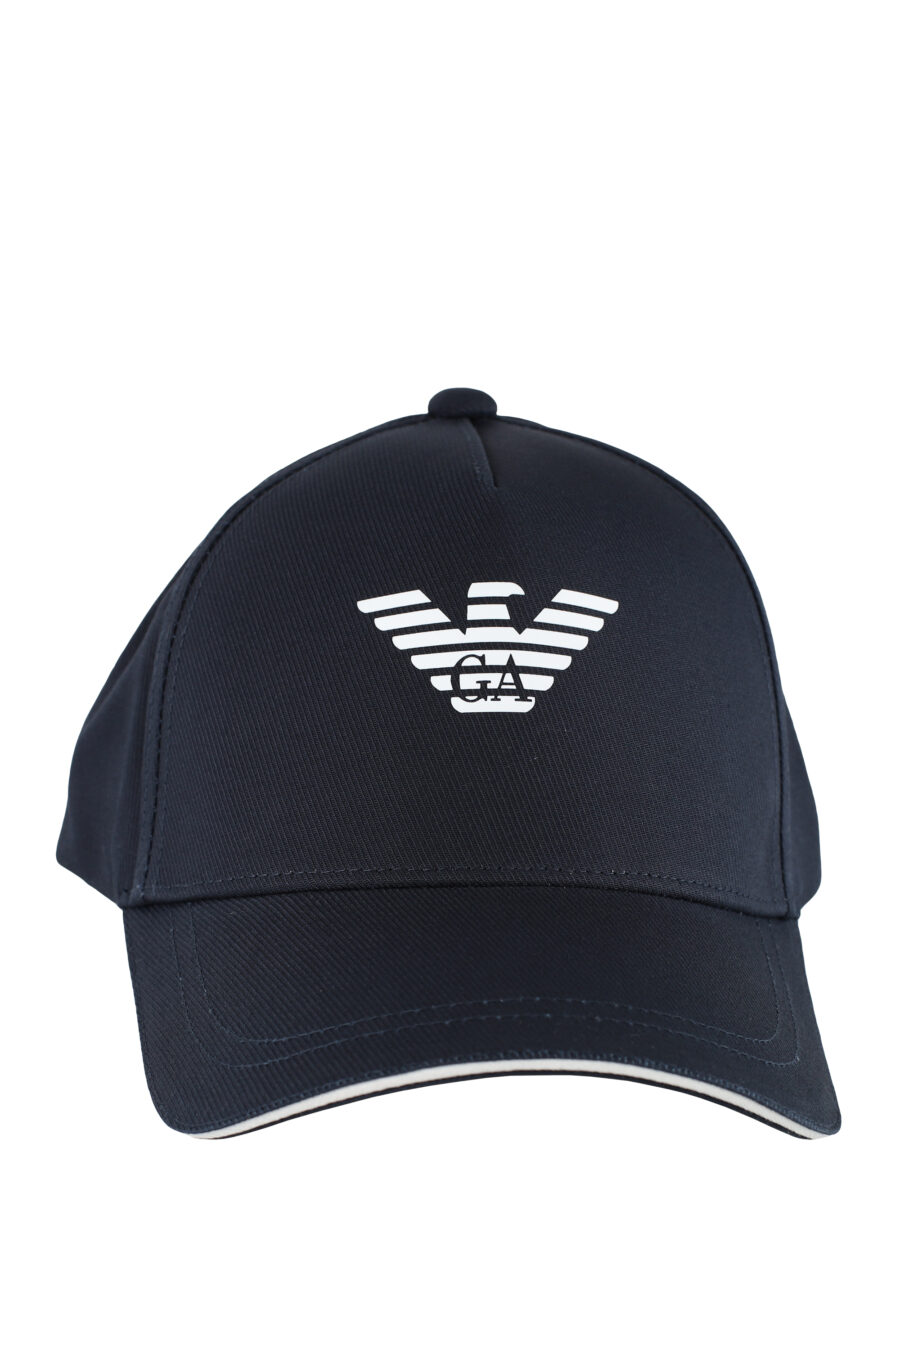 Gorra azul oscura con logo aguila blanco - IMG 5160